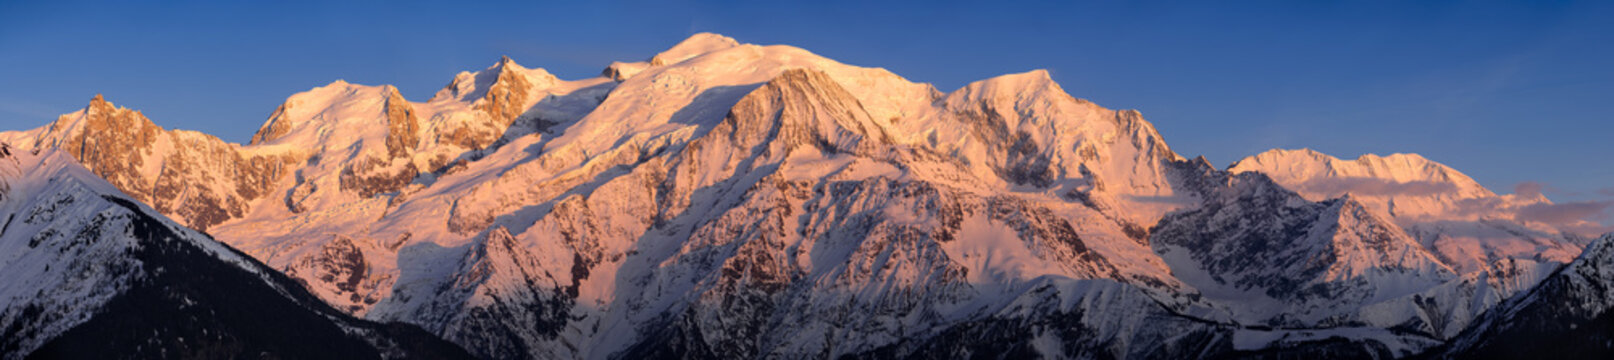 Mont Blanc mountain range at sunset. Aiguille du Midi needle, Mont Blanc du Tacul, Bossons Glacier, Mont Blanc. Chamonix, Haute-Savoie, Alps, France